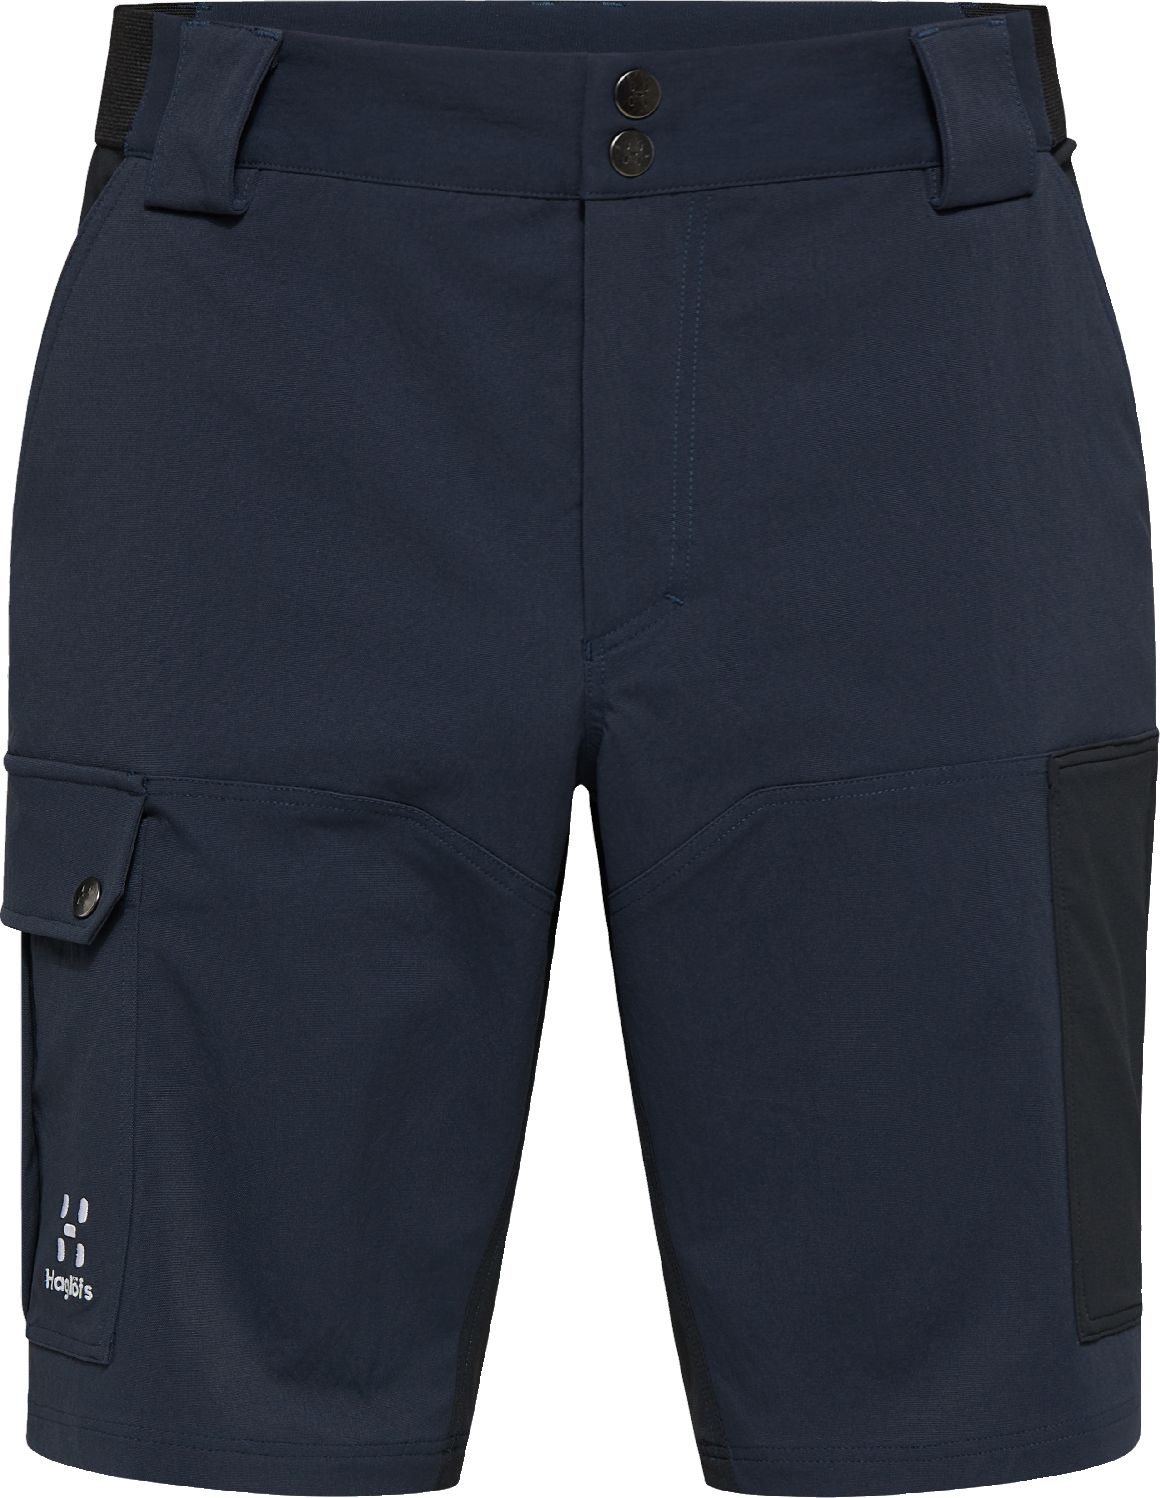 Men’s Rugged Standard Shorts Tarn Blue/True Black